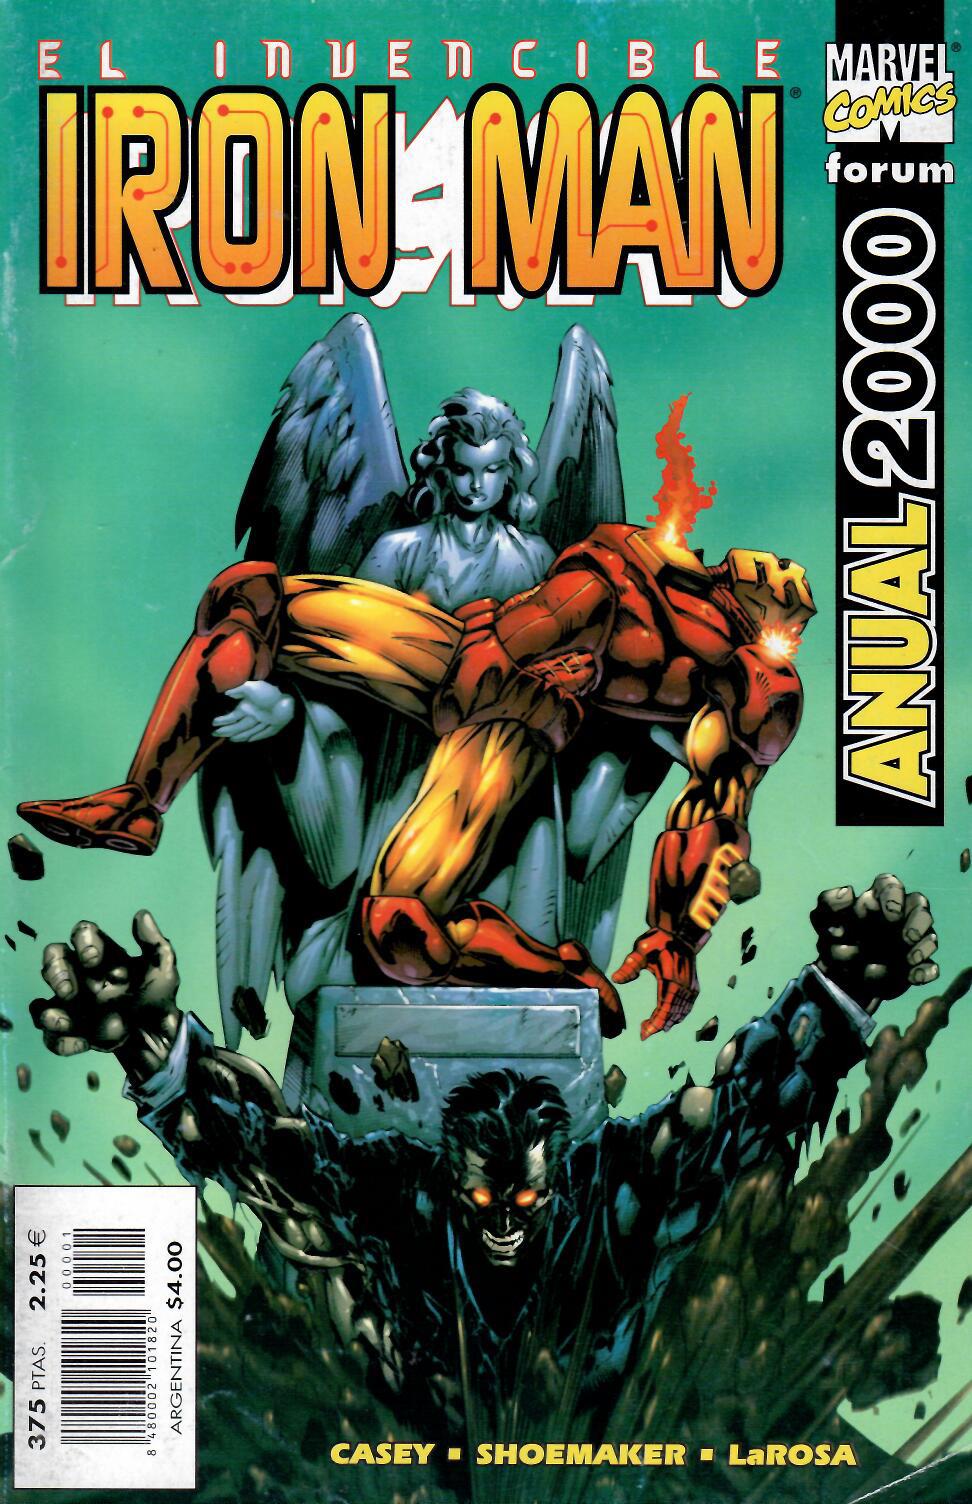 Iron Man v4. Forum 1998. Anual 2000